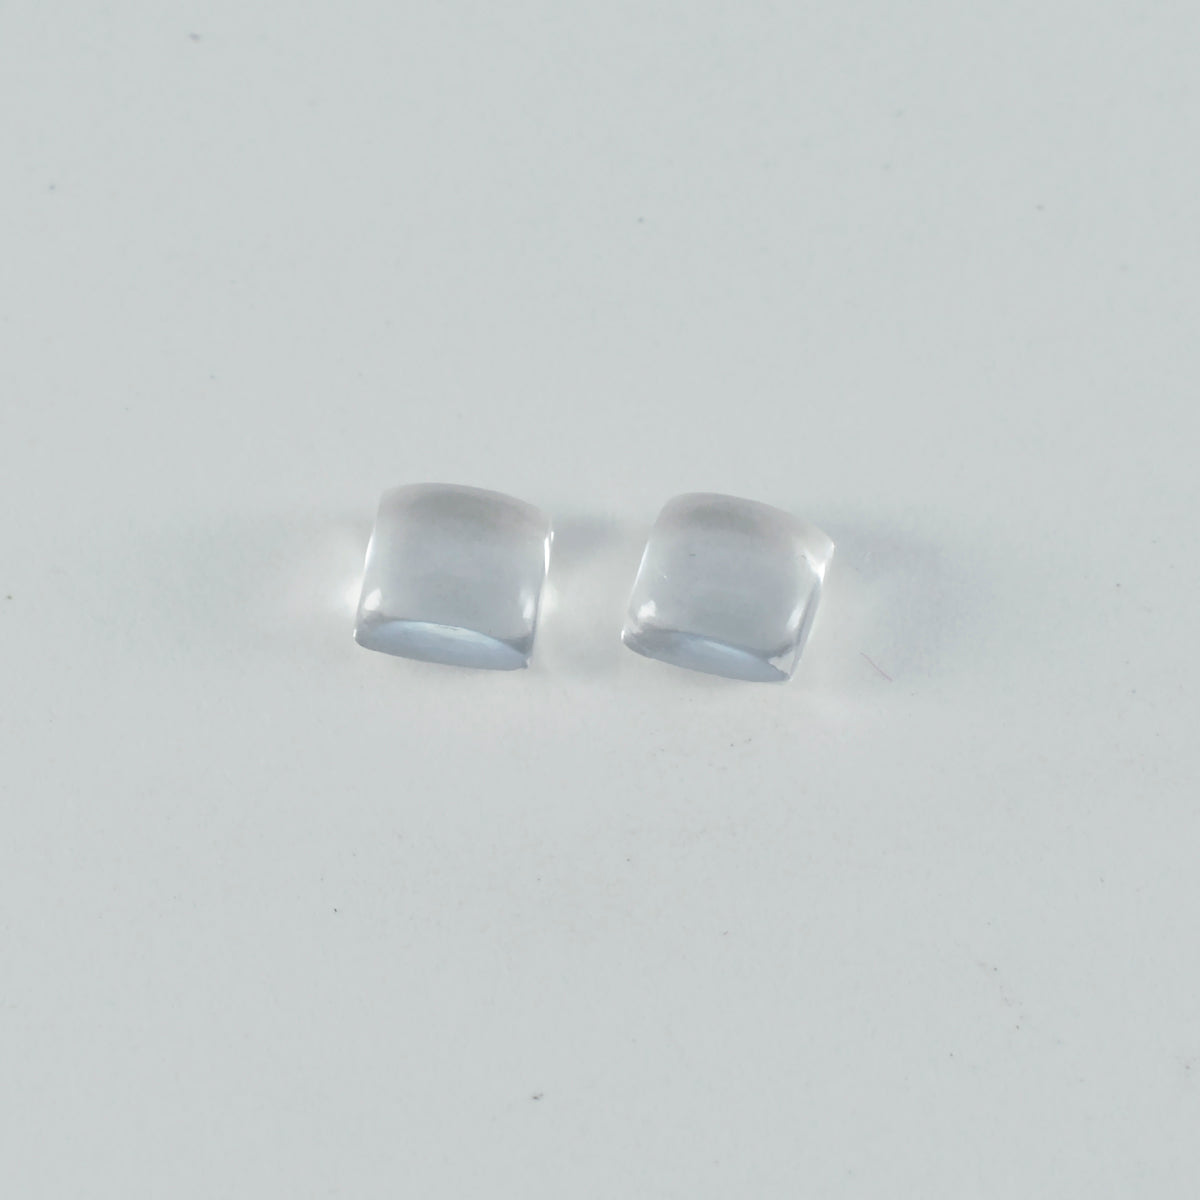 riyogems 1 шт. белый кристалл кварца кабошон 7x7 мм квадратной формы довольно качественный драгоценный камень